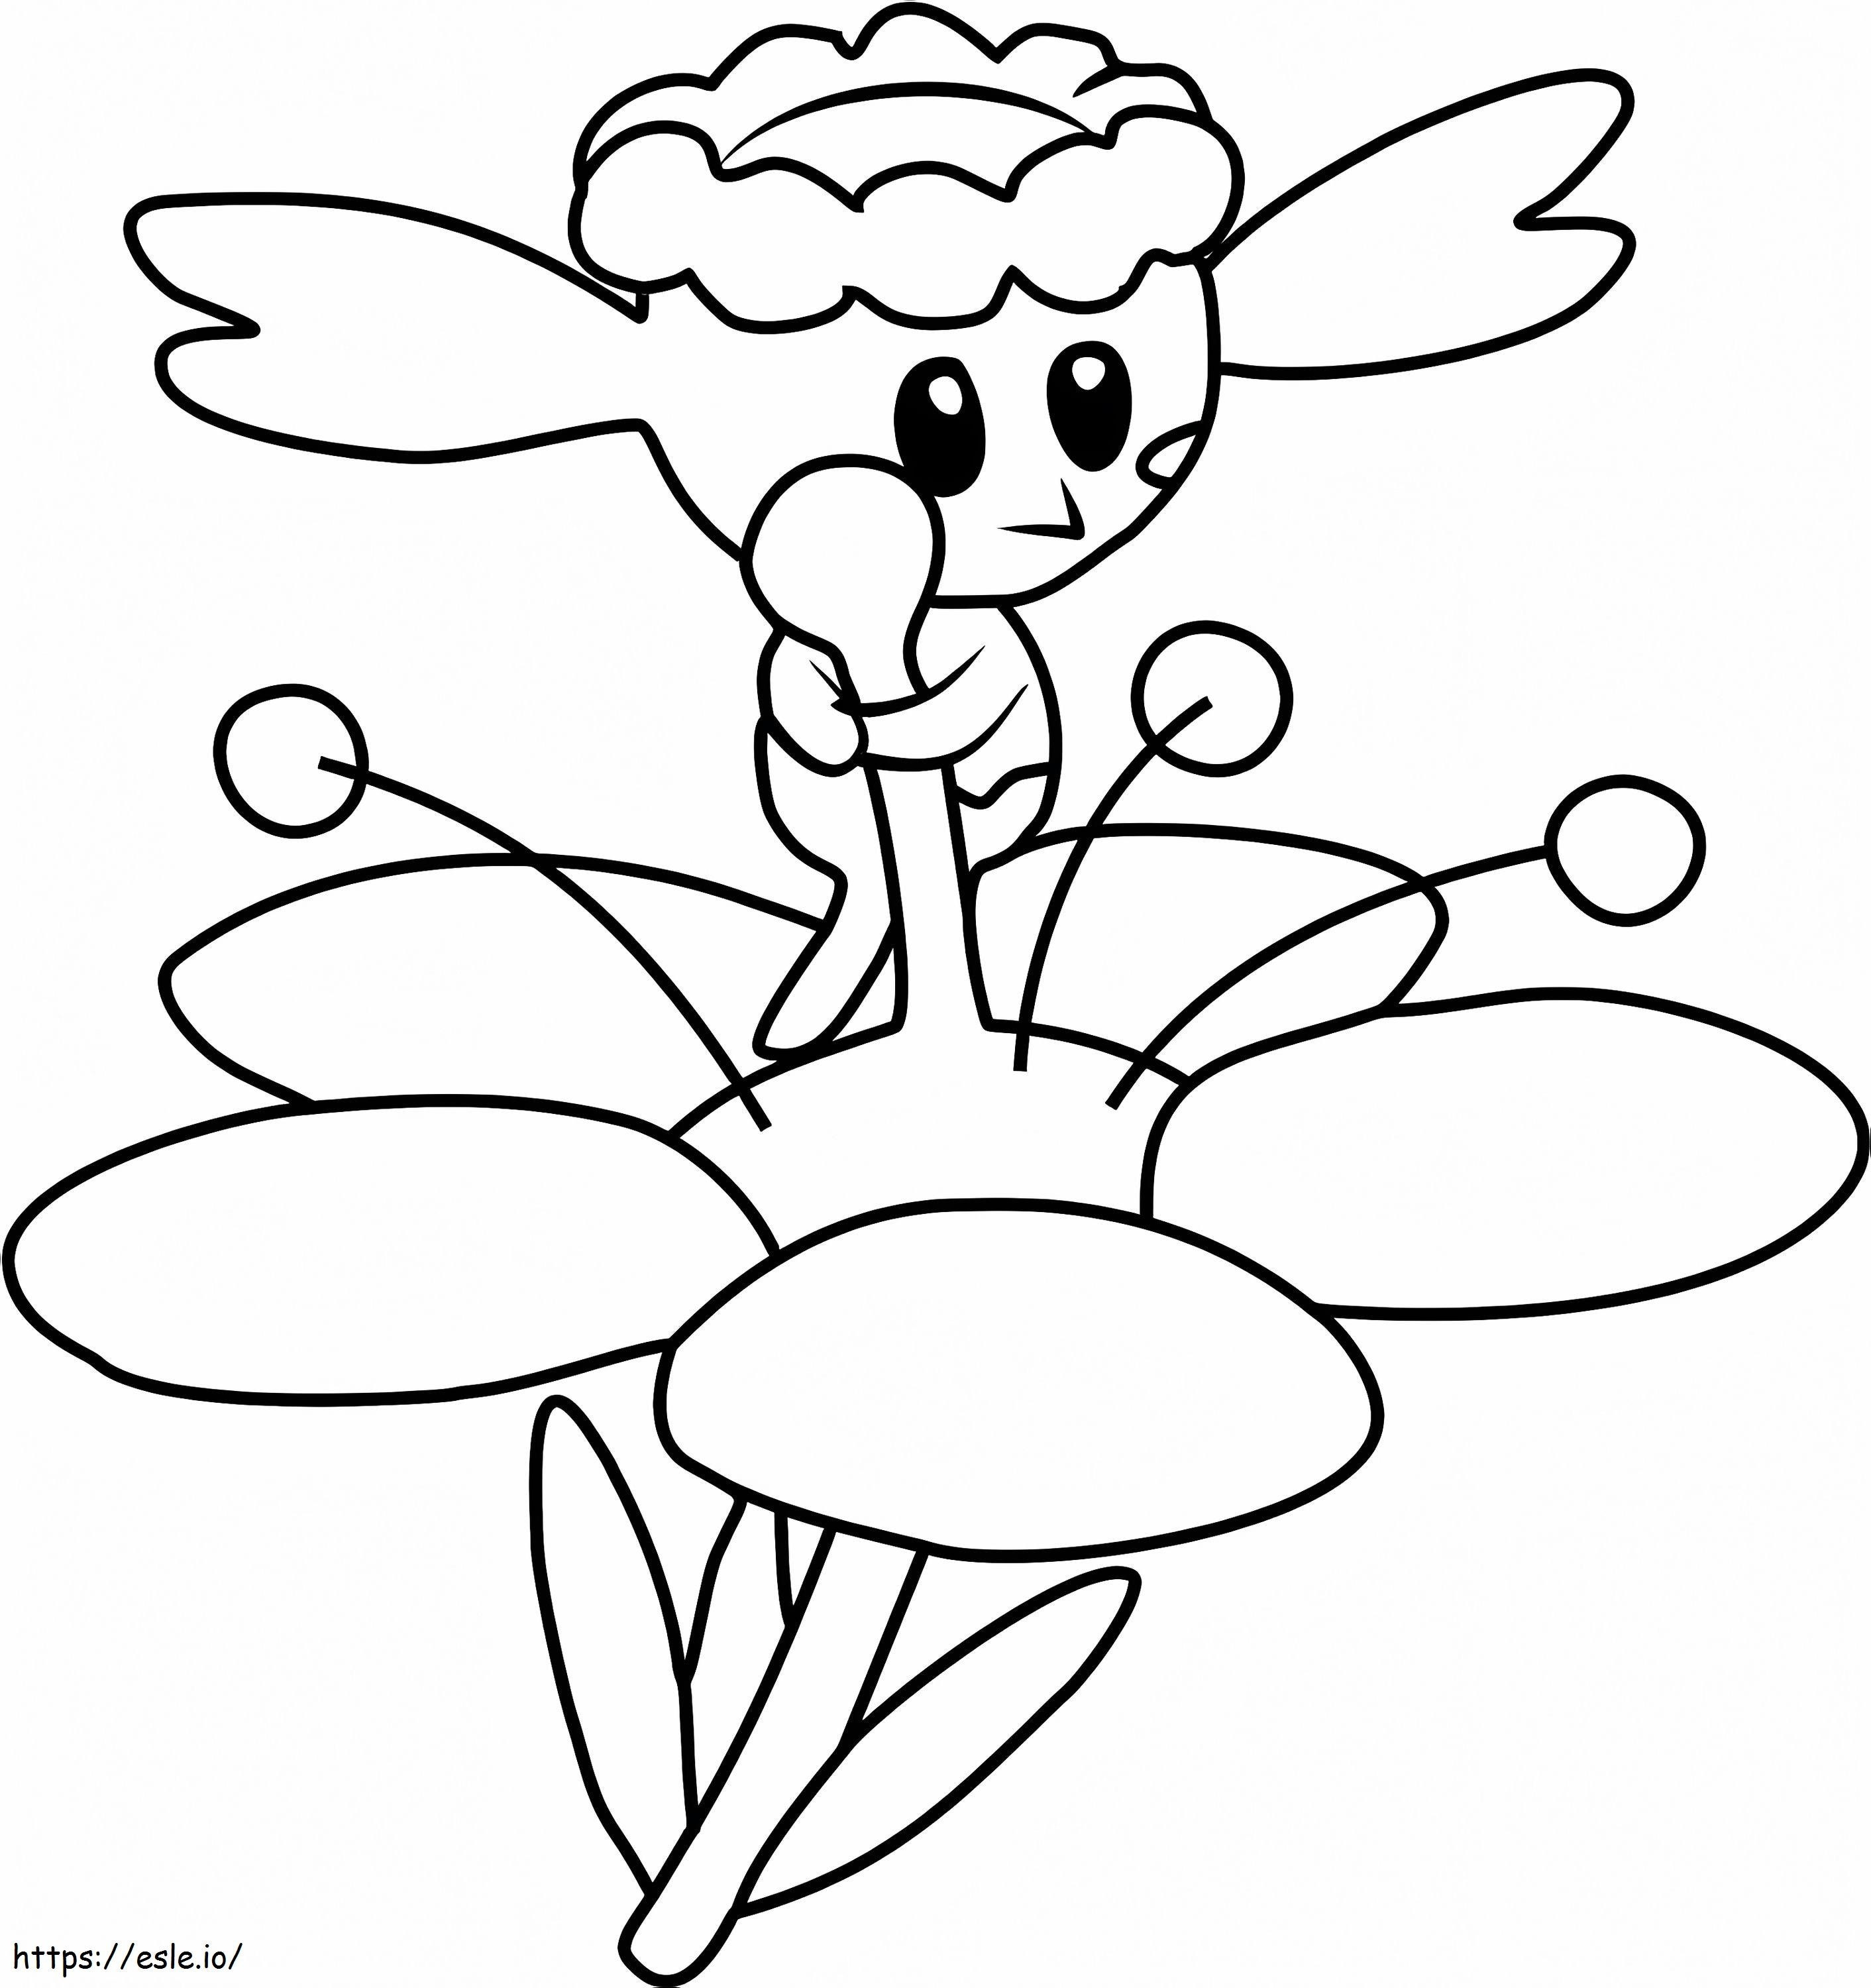 Coloriage Flabebe Gen 6 Pokémon à imprimer dessin